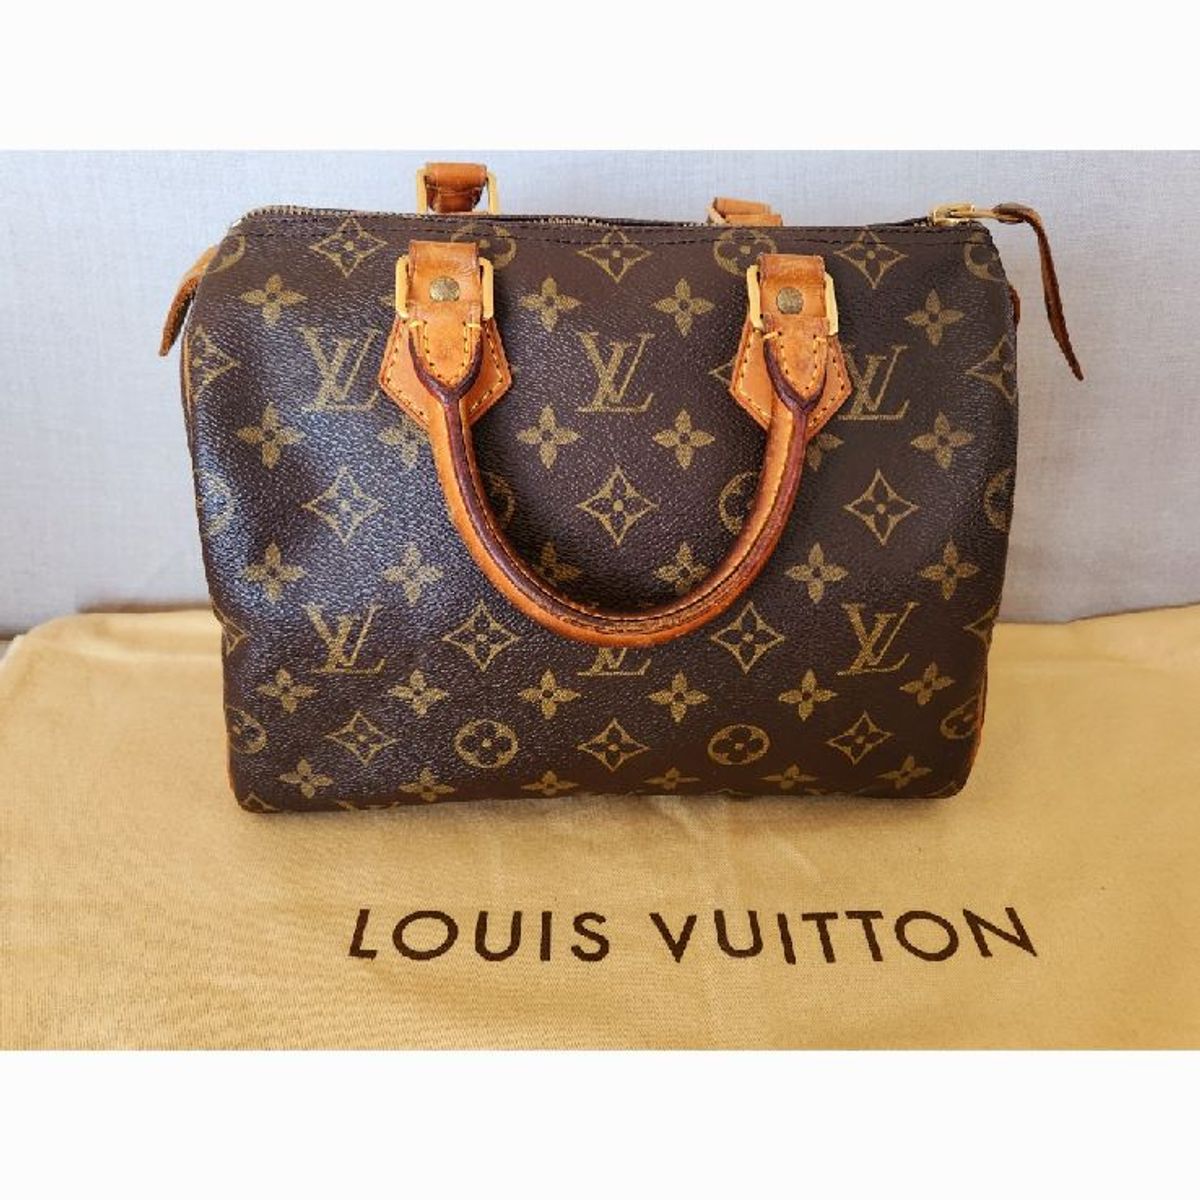 Bolsa Louis Vuitton Original, Bolsa de Ombro Feminina Louis Vuitton Usado  86062674